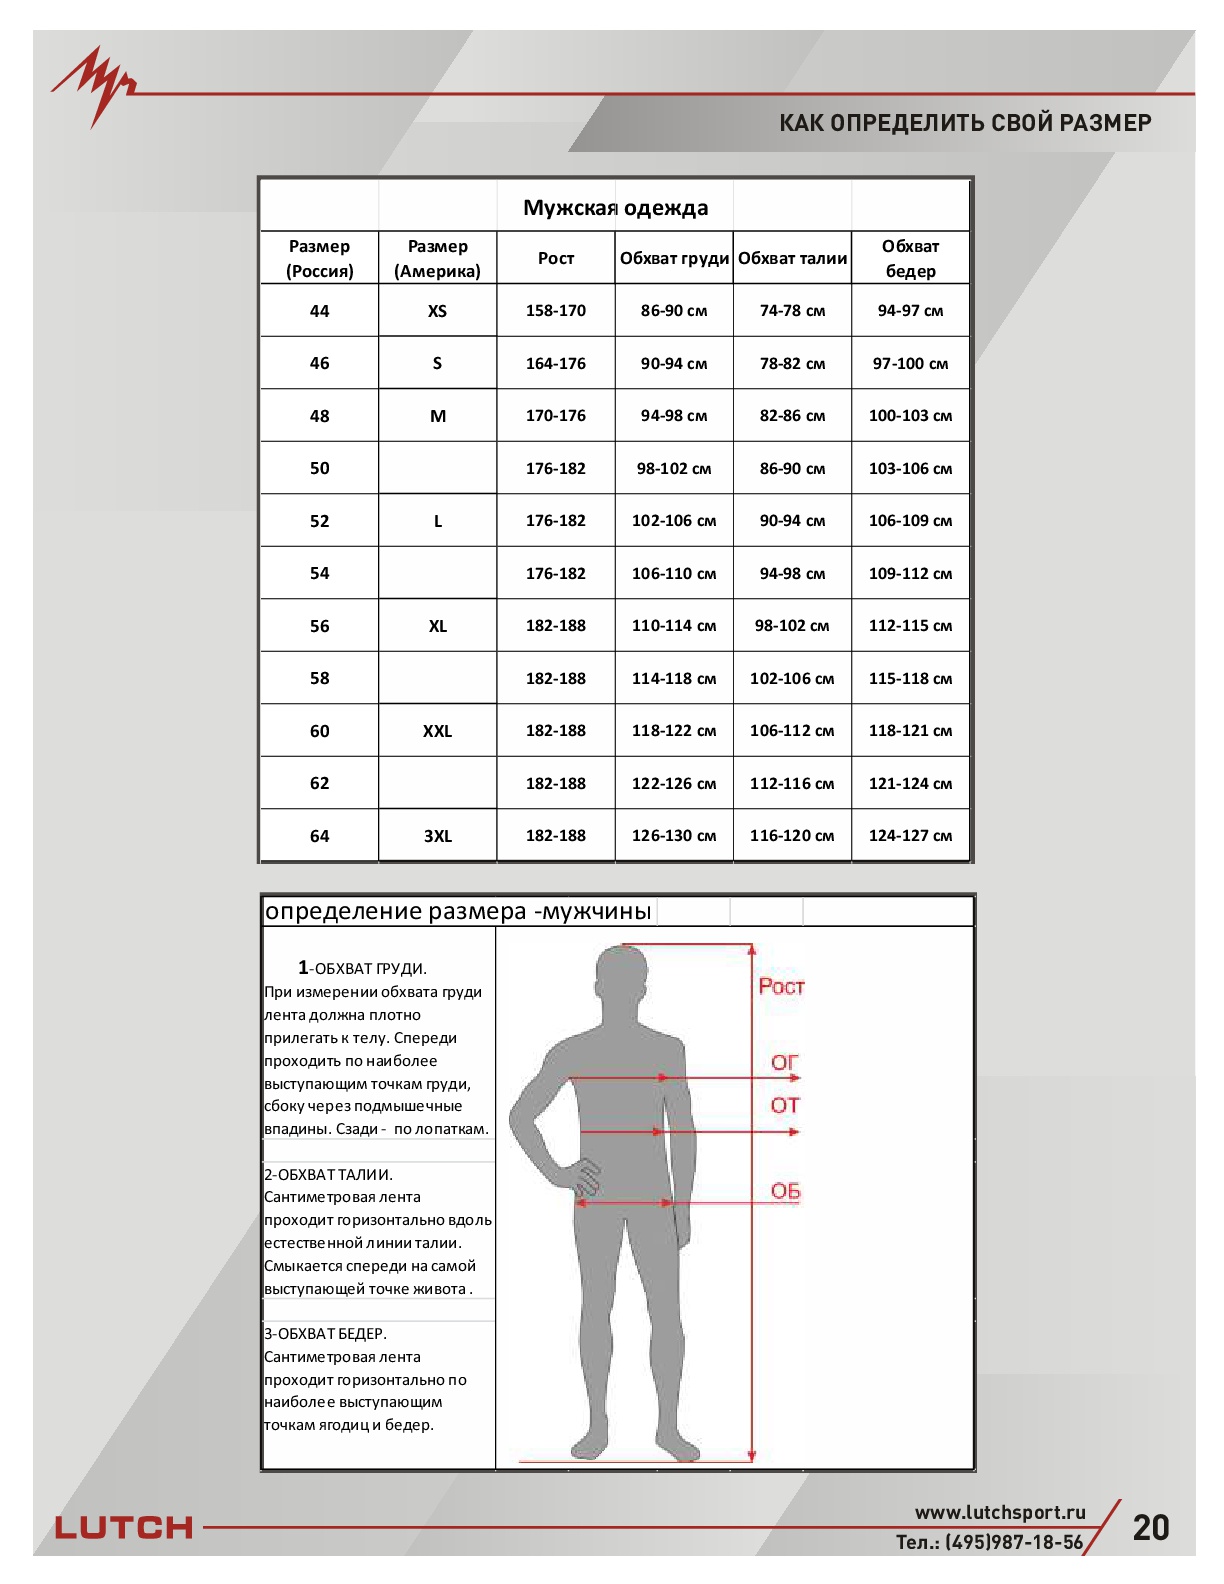 Стандартные мужские размеры. Обхват груди 120 см мужской размер. Таблица размеров мужской одежды. Таблица размеров одежды для мужчин. Мужские параметры одежды.